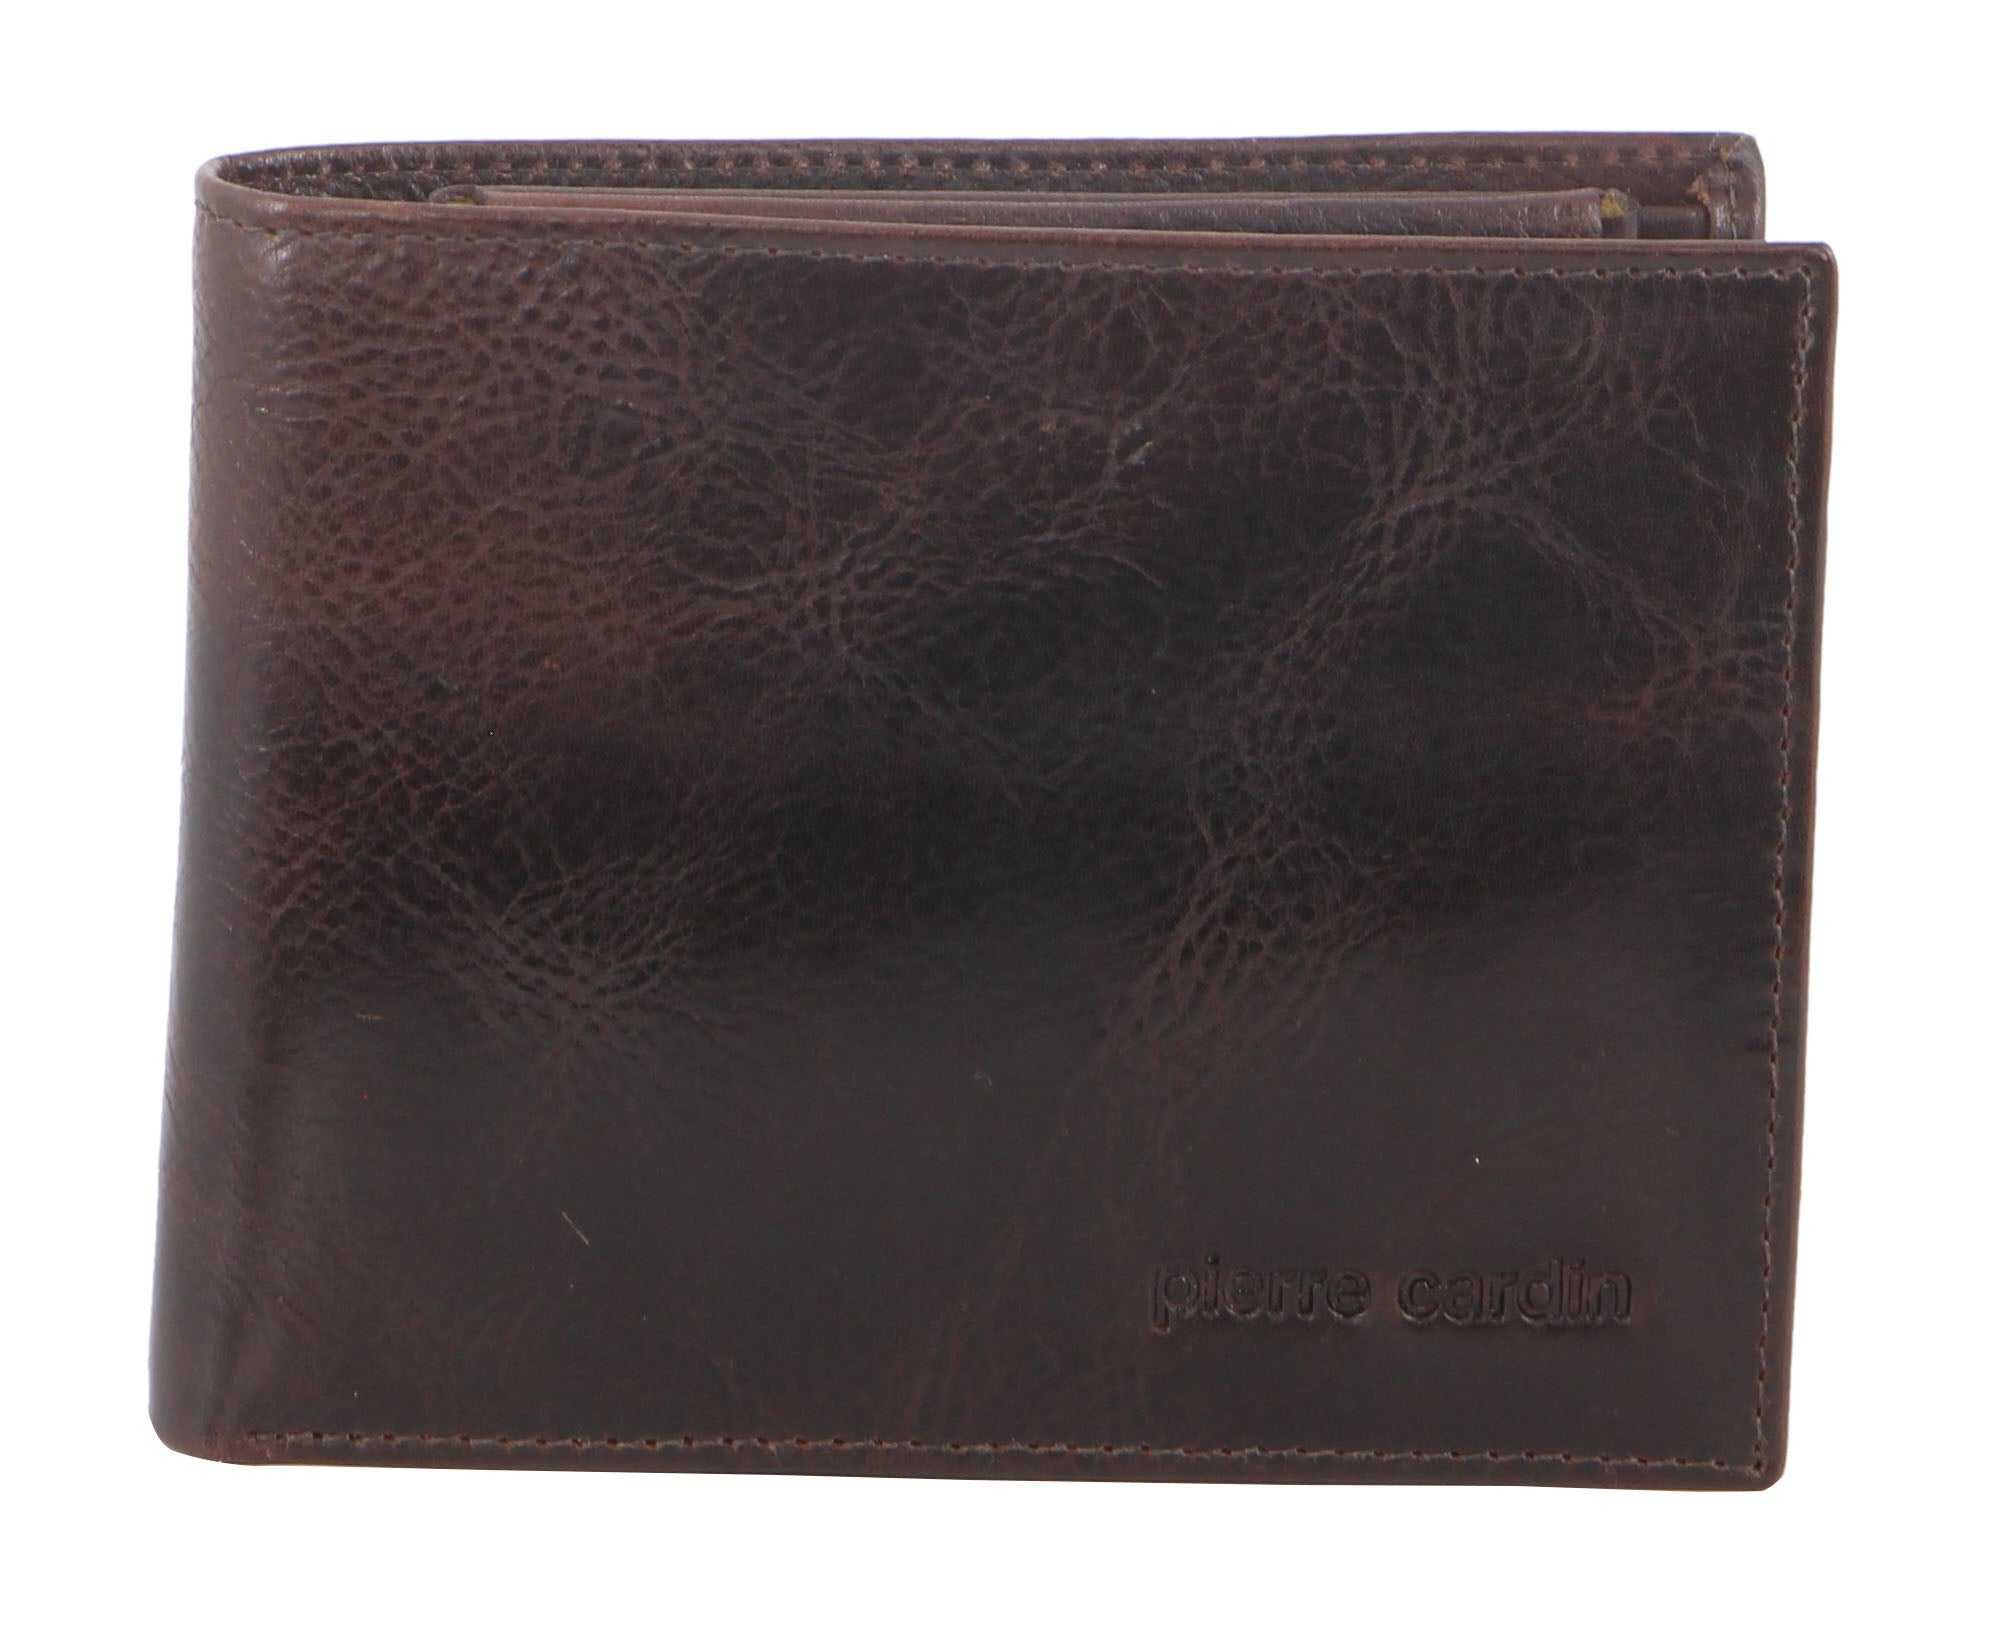 Pierre Cardin Italian Leather Men's Wallet/Card Holder in Chocolate